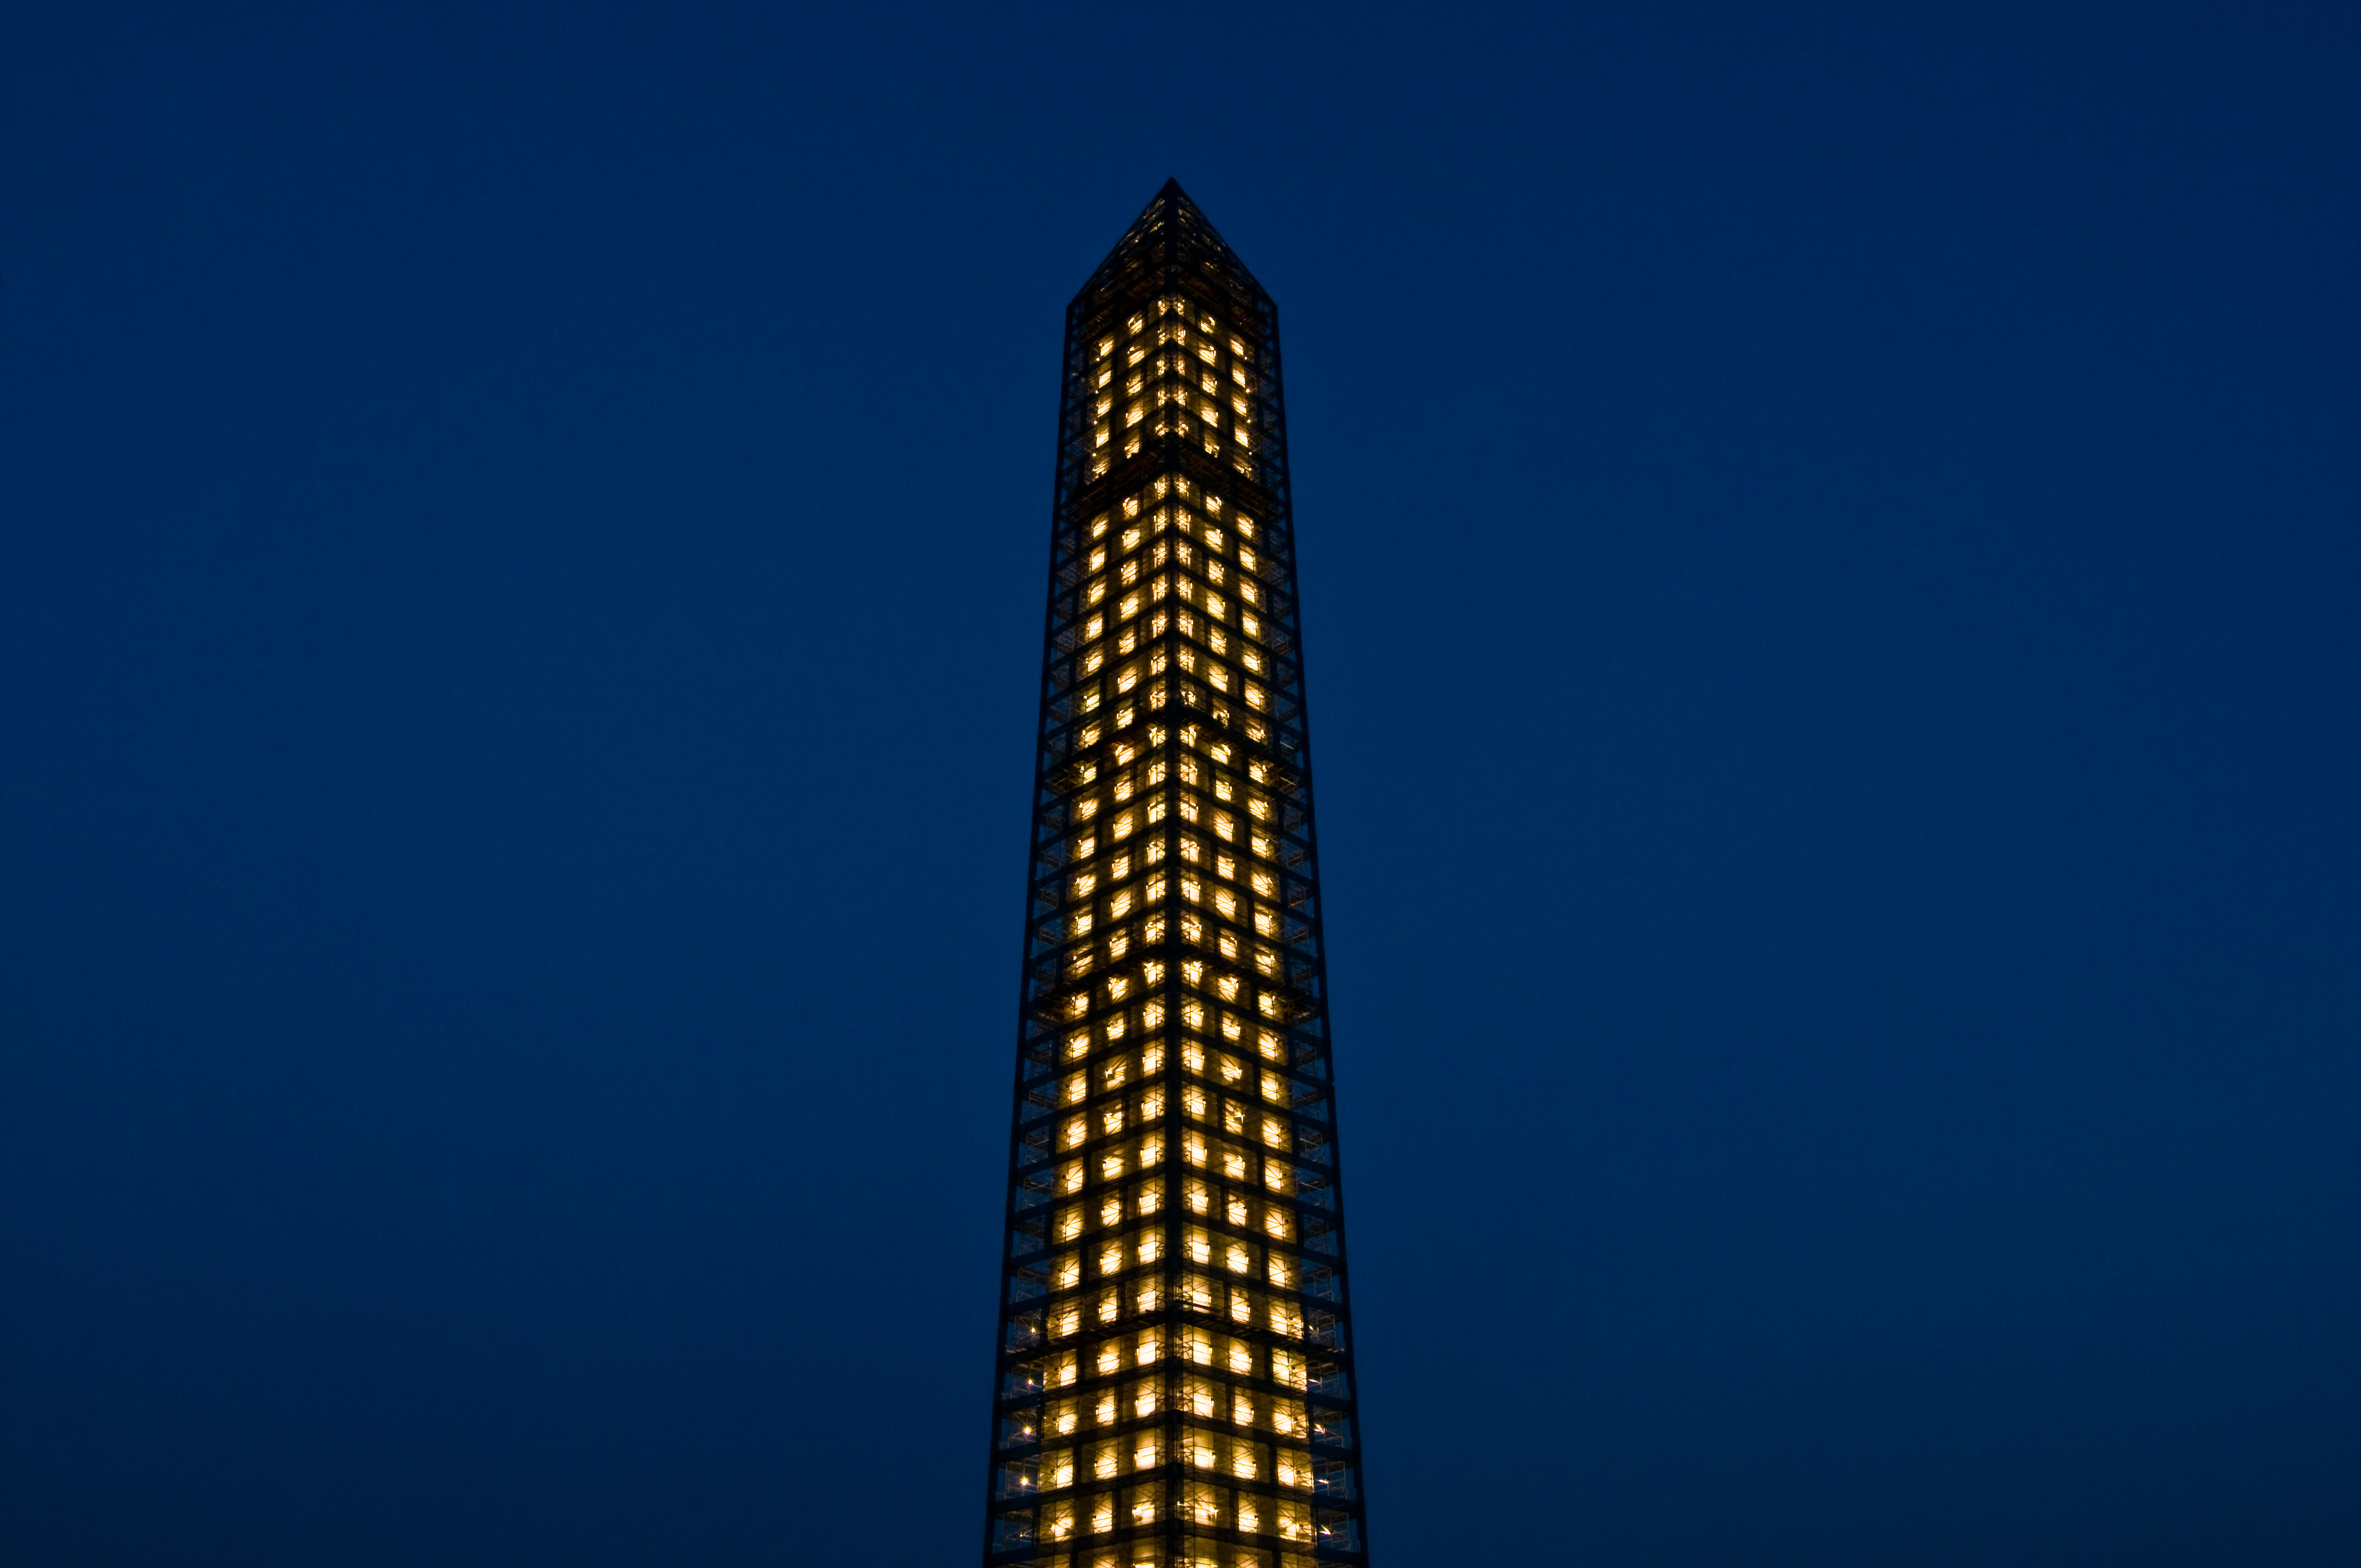 Washington Monument - Encased in Steel & Light - 07-16-13